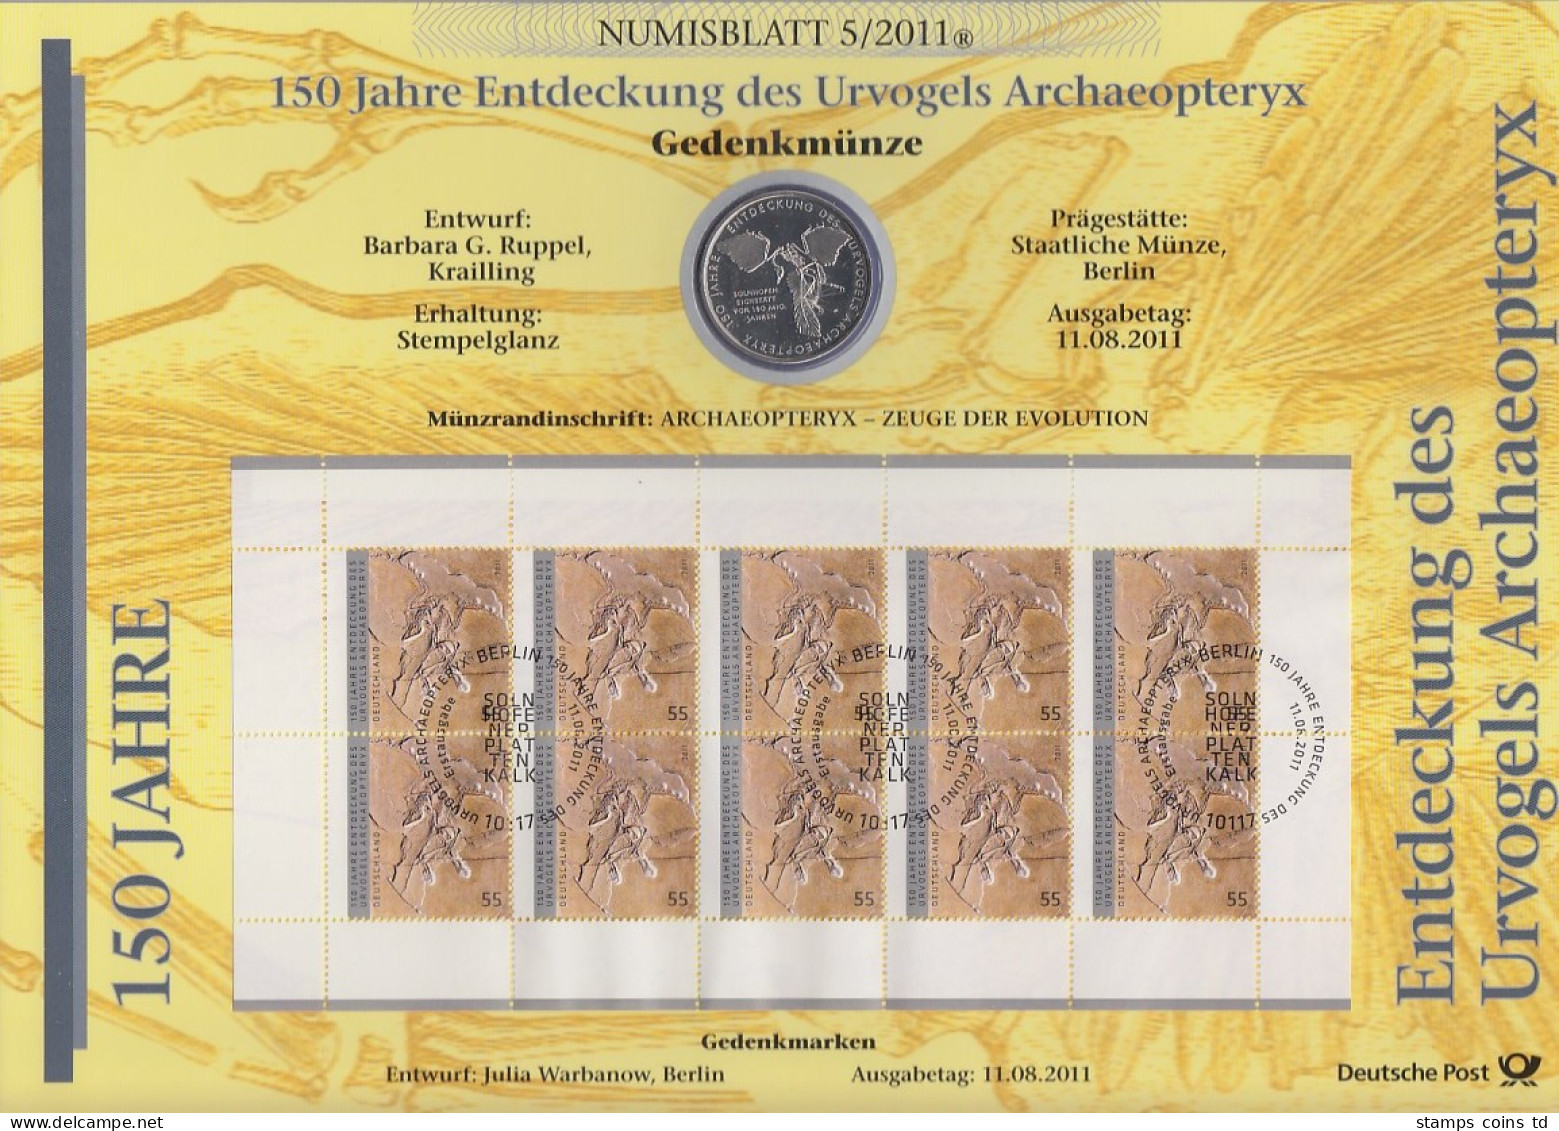 Bundesrepublik Numisblatt 5/2011 Archaeopteryx Mit 10-Euro-Gedenkmünze - Collections